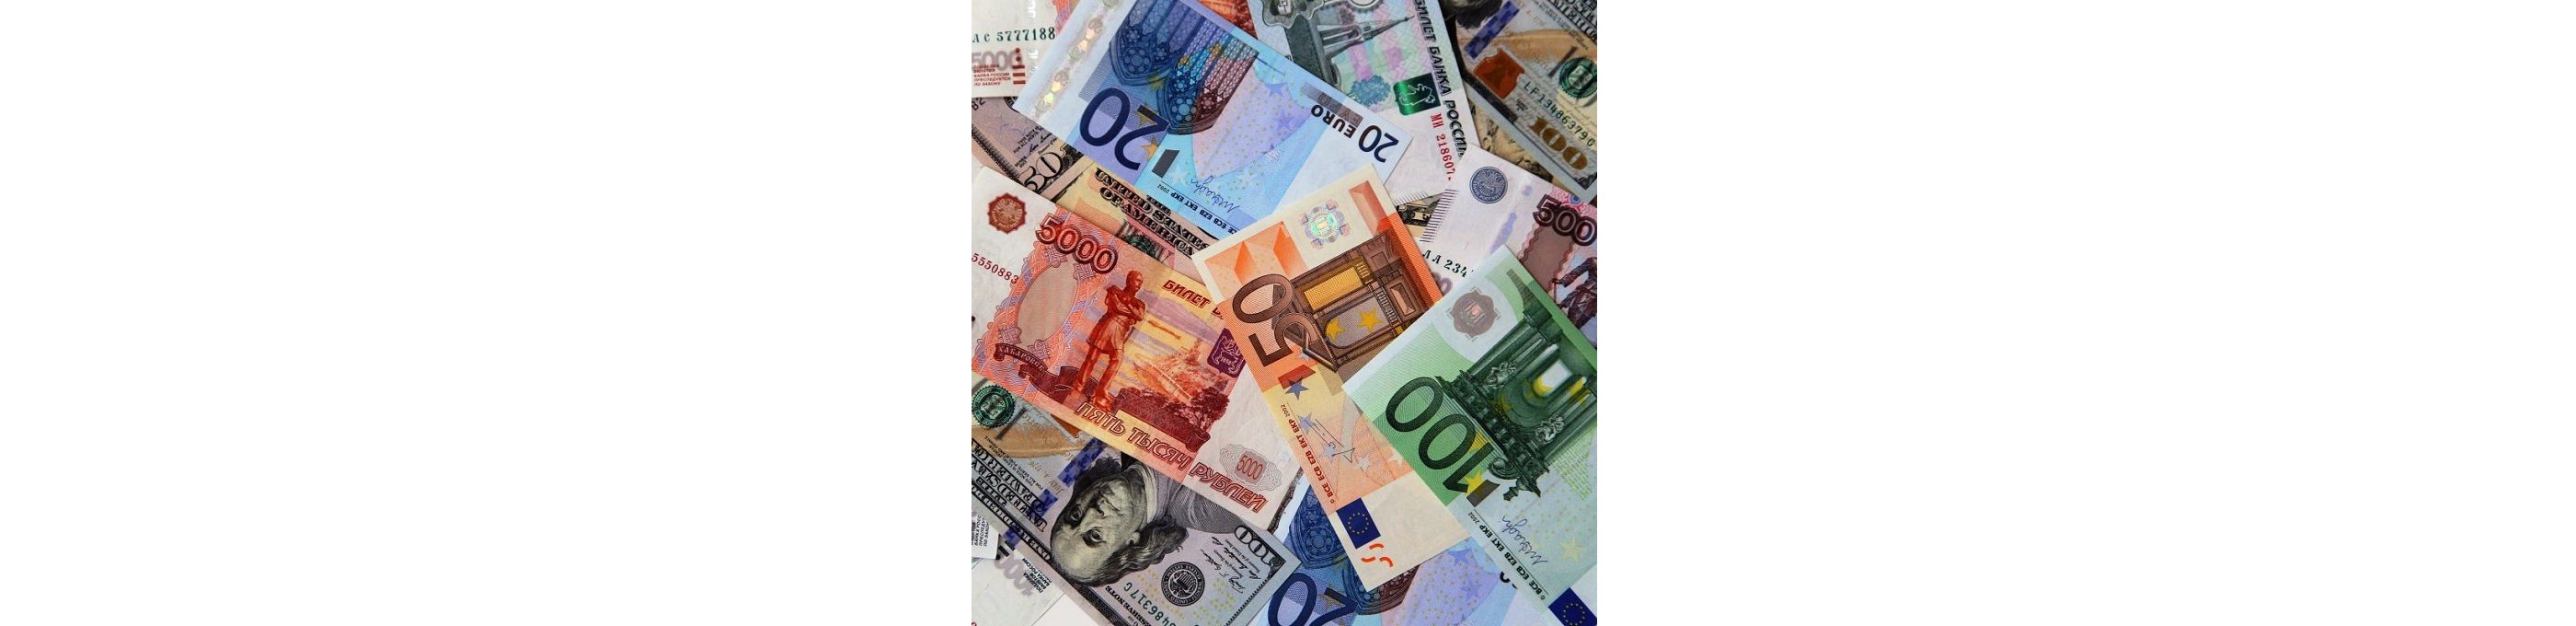 Очень многие считают обмен валюты крайне выгодным вариантом для хранения денег. Однако зачастую, при ее покупке мы совершаем массу ошибок